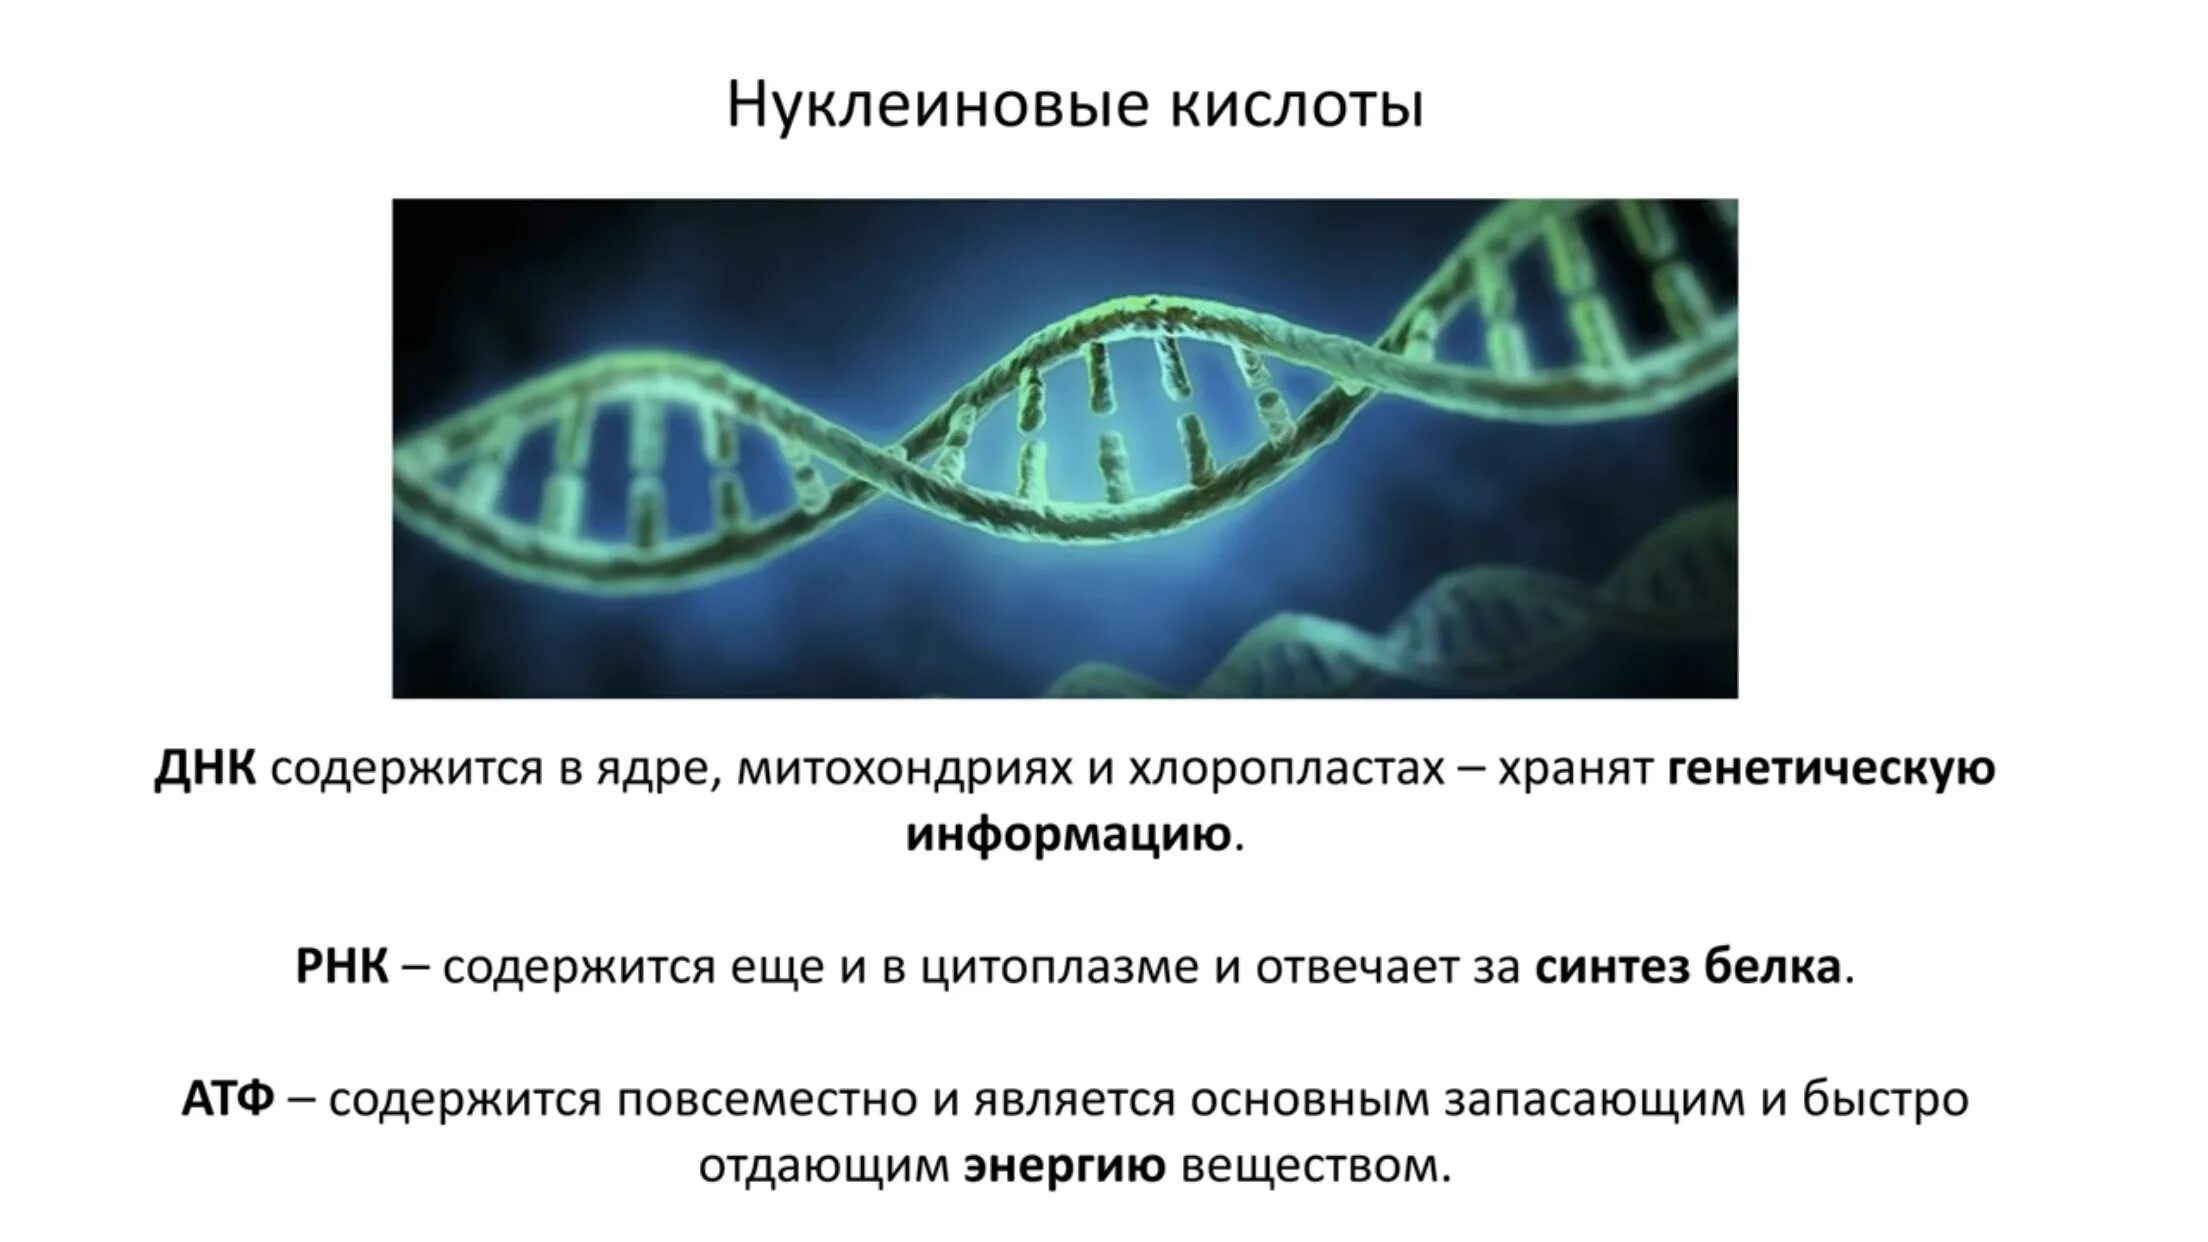 Кольцевая ДНК В хлоропластах. В ядре содержатся нуклеиновые кислоты. Наследственная информация растительной клетки